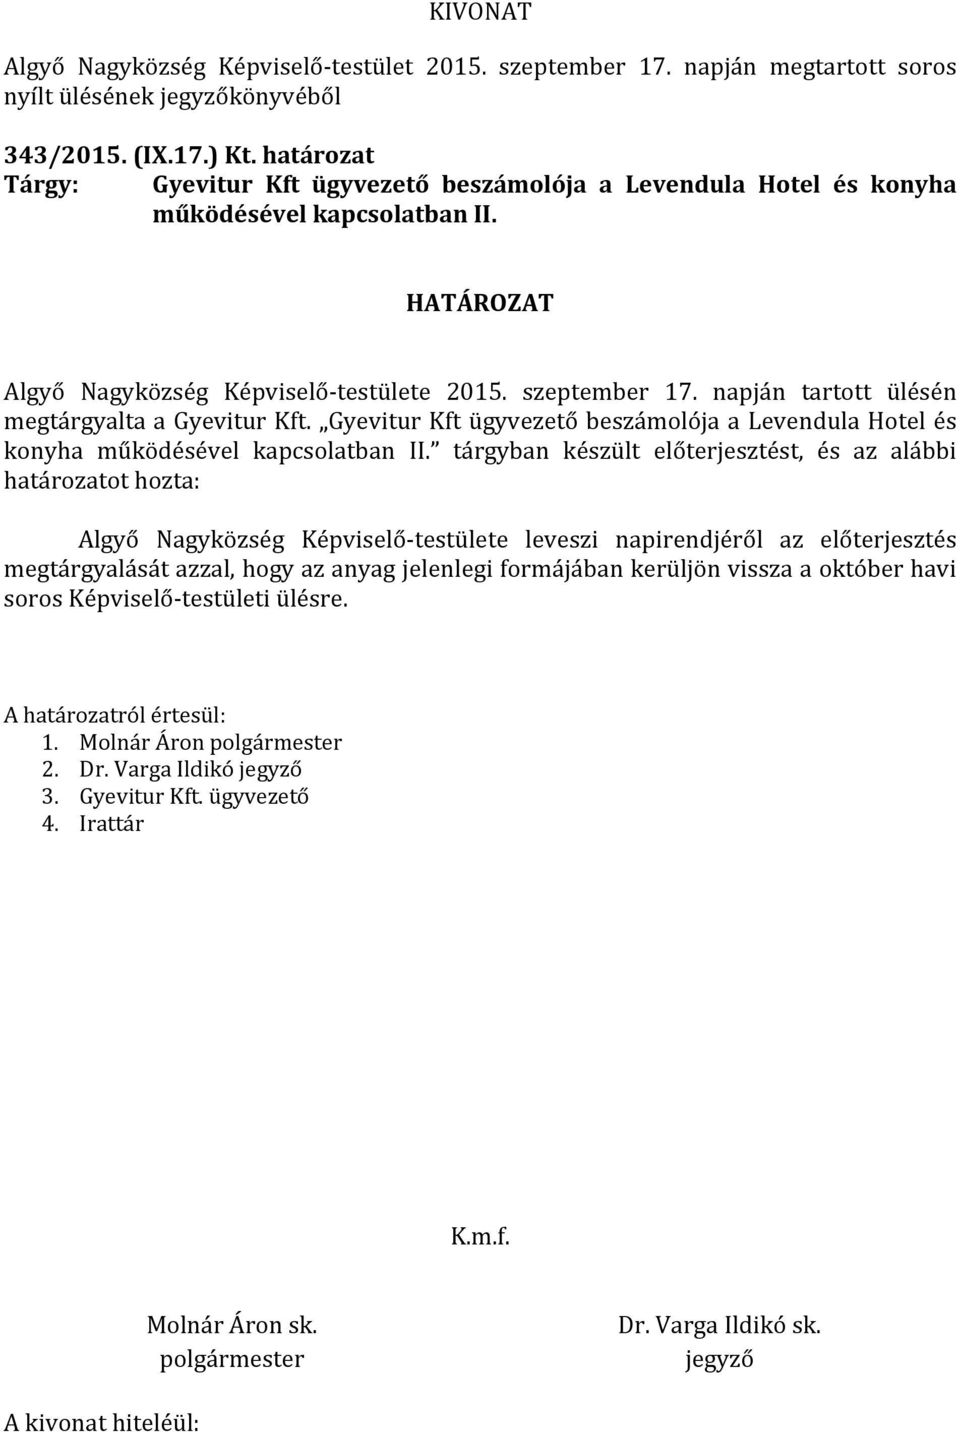 Gyevitur Kft ügyvezető beszámolója a Levendula Hotel és konyha működésével kapcsolatban II.